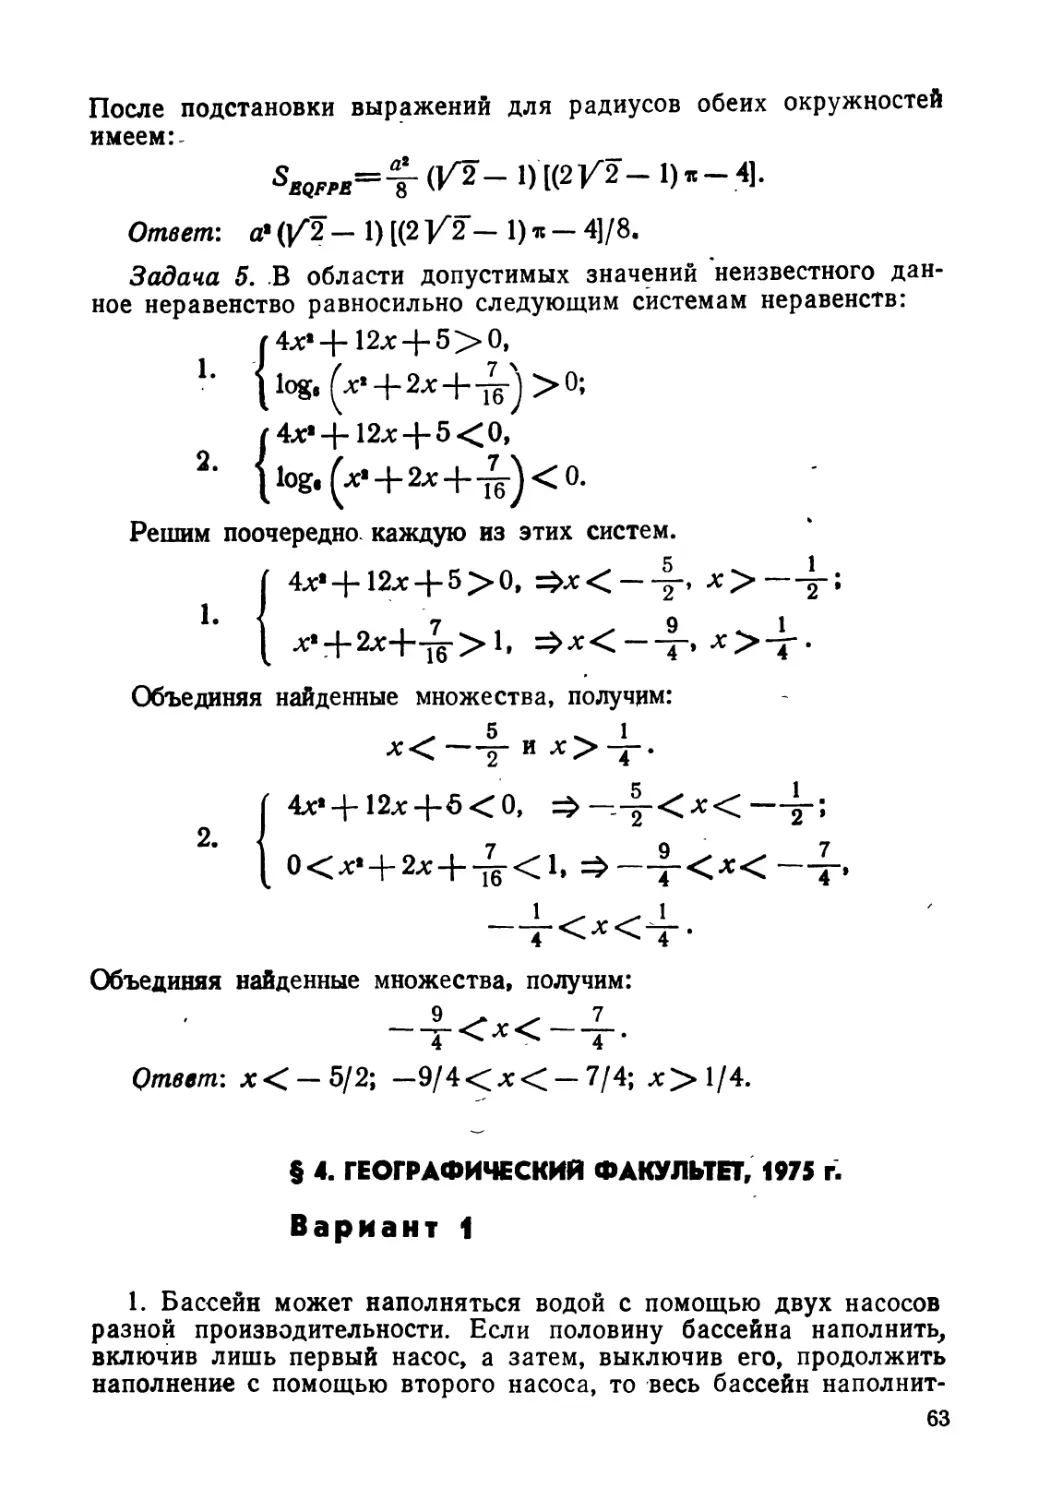 § 4. Географический факультет, 1975 г